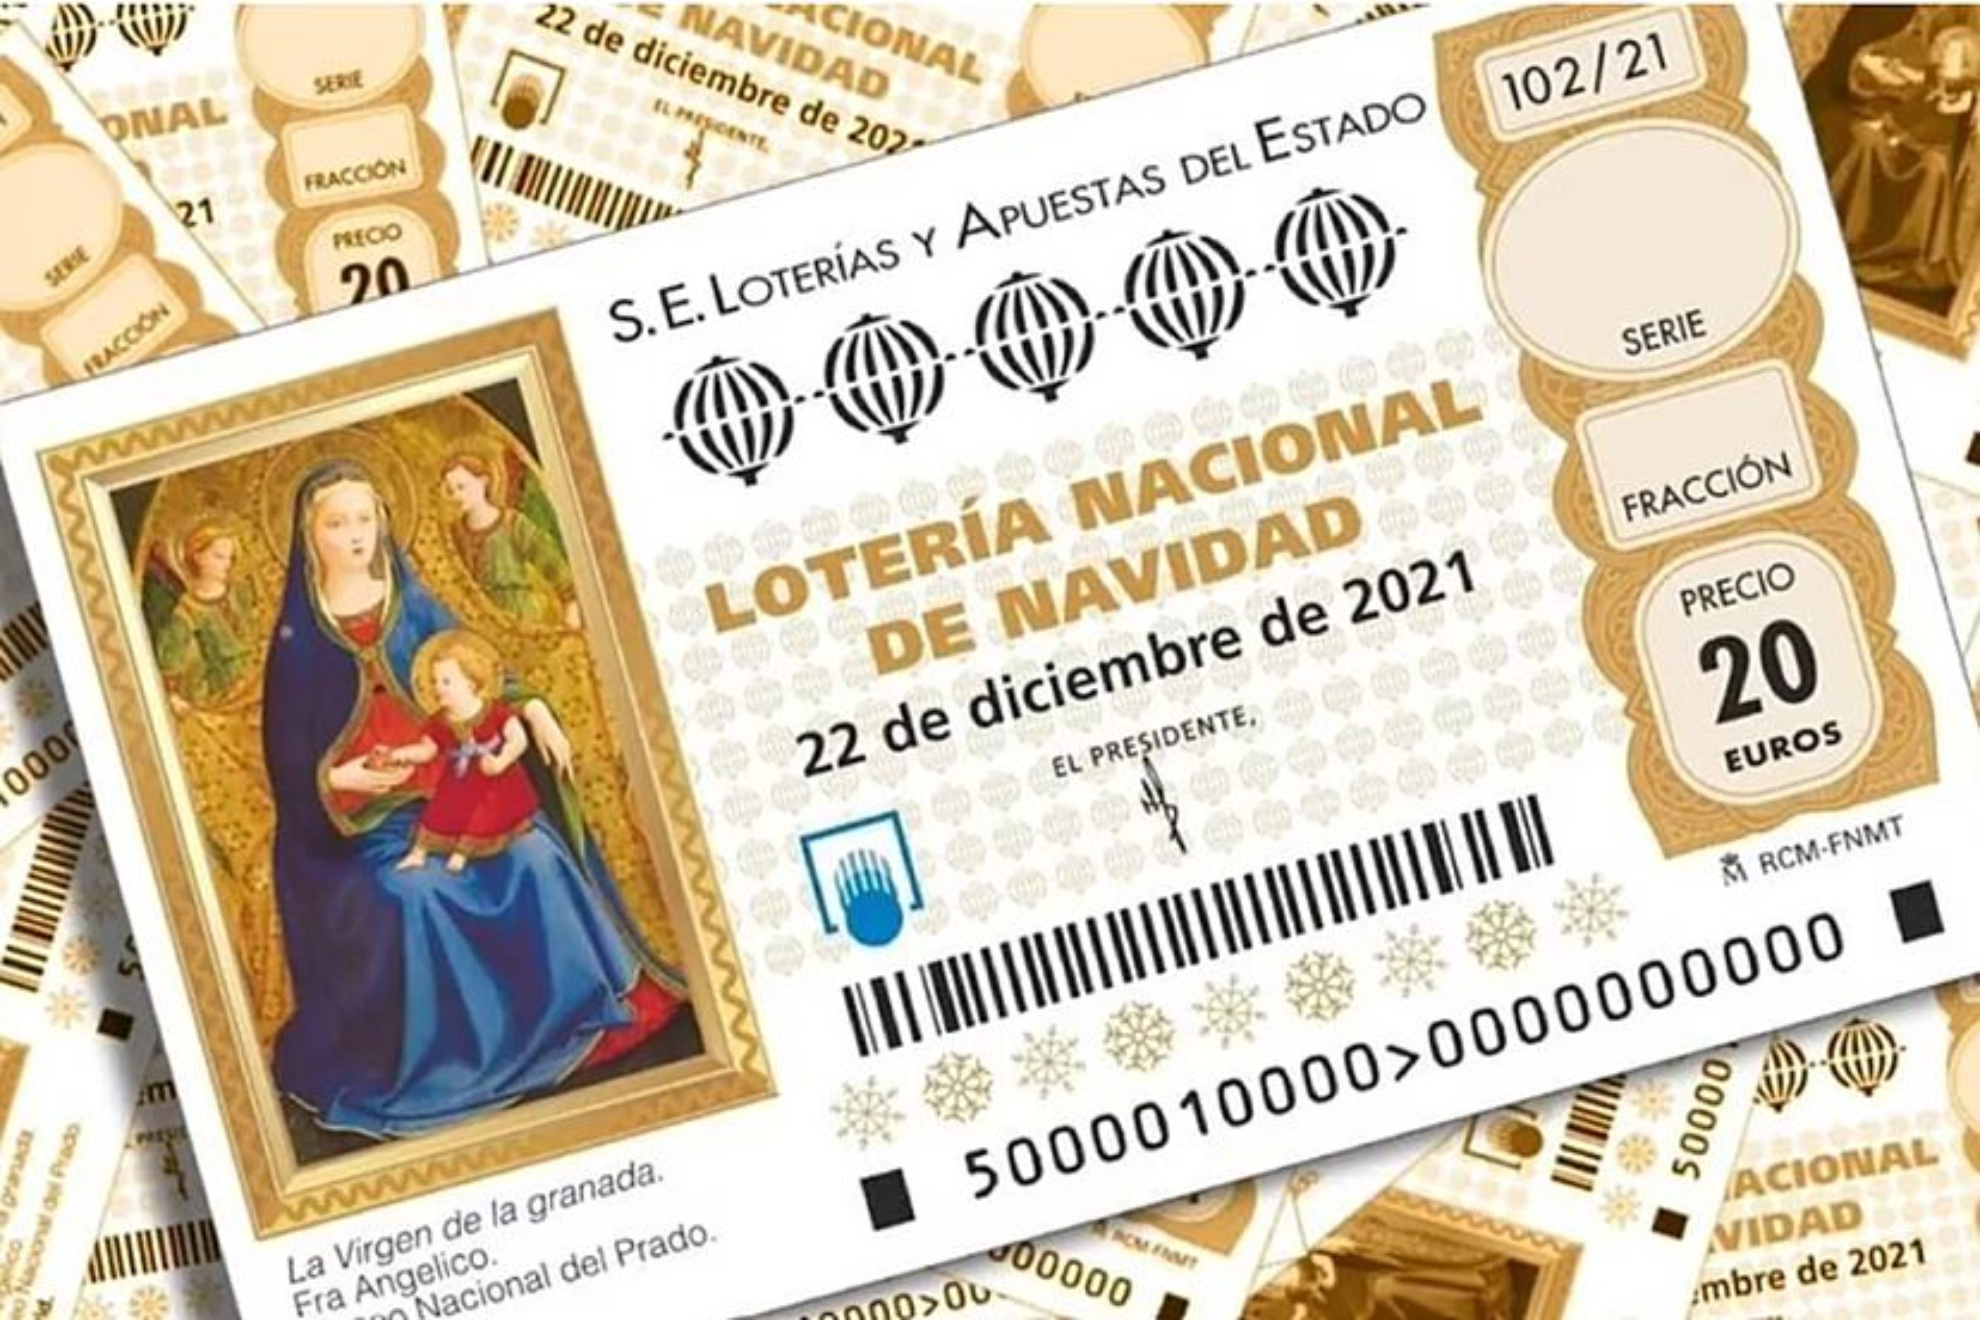 Cunto gana cada lotero si tocan los premios de la Lotera de Navidad en su administracin?